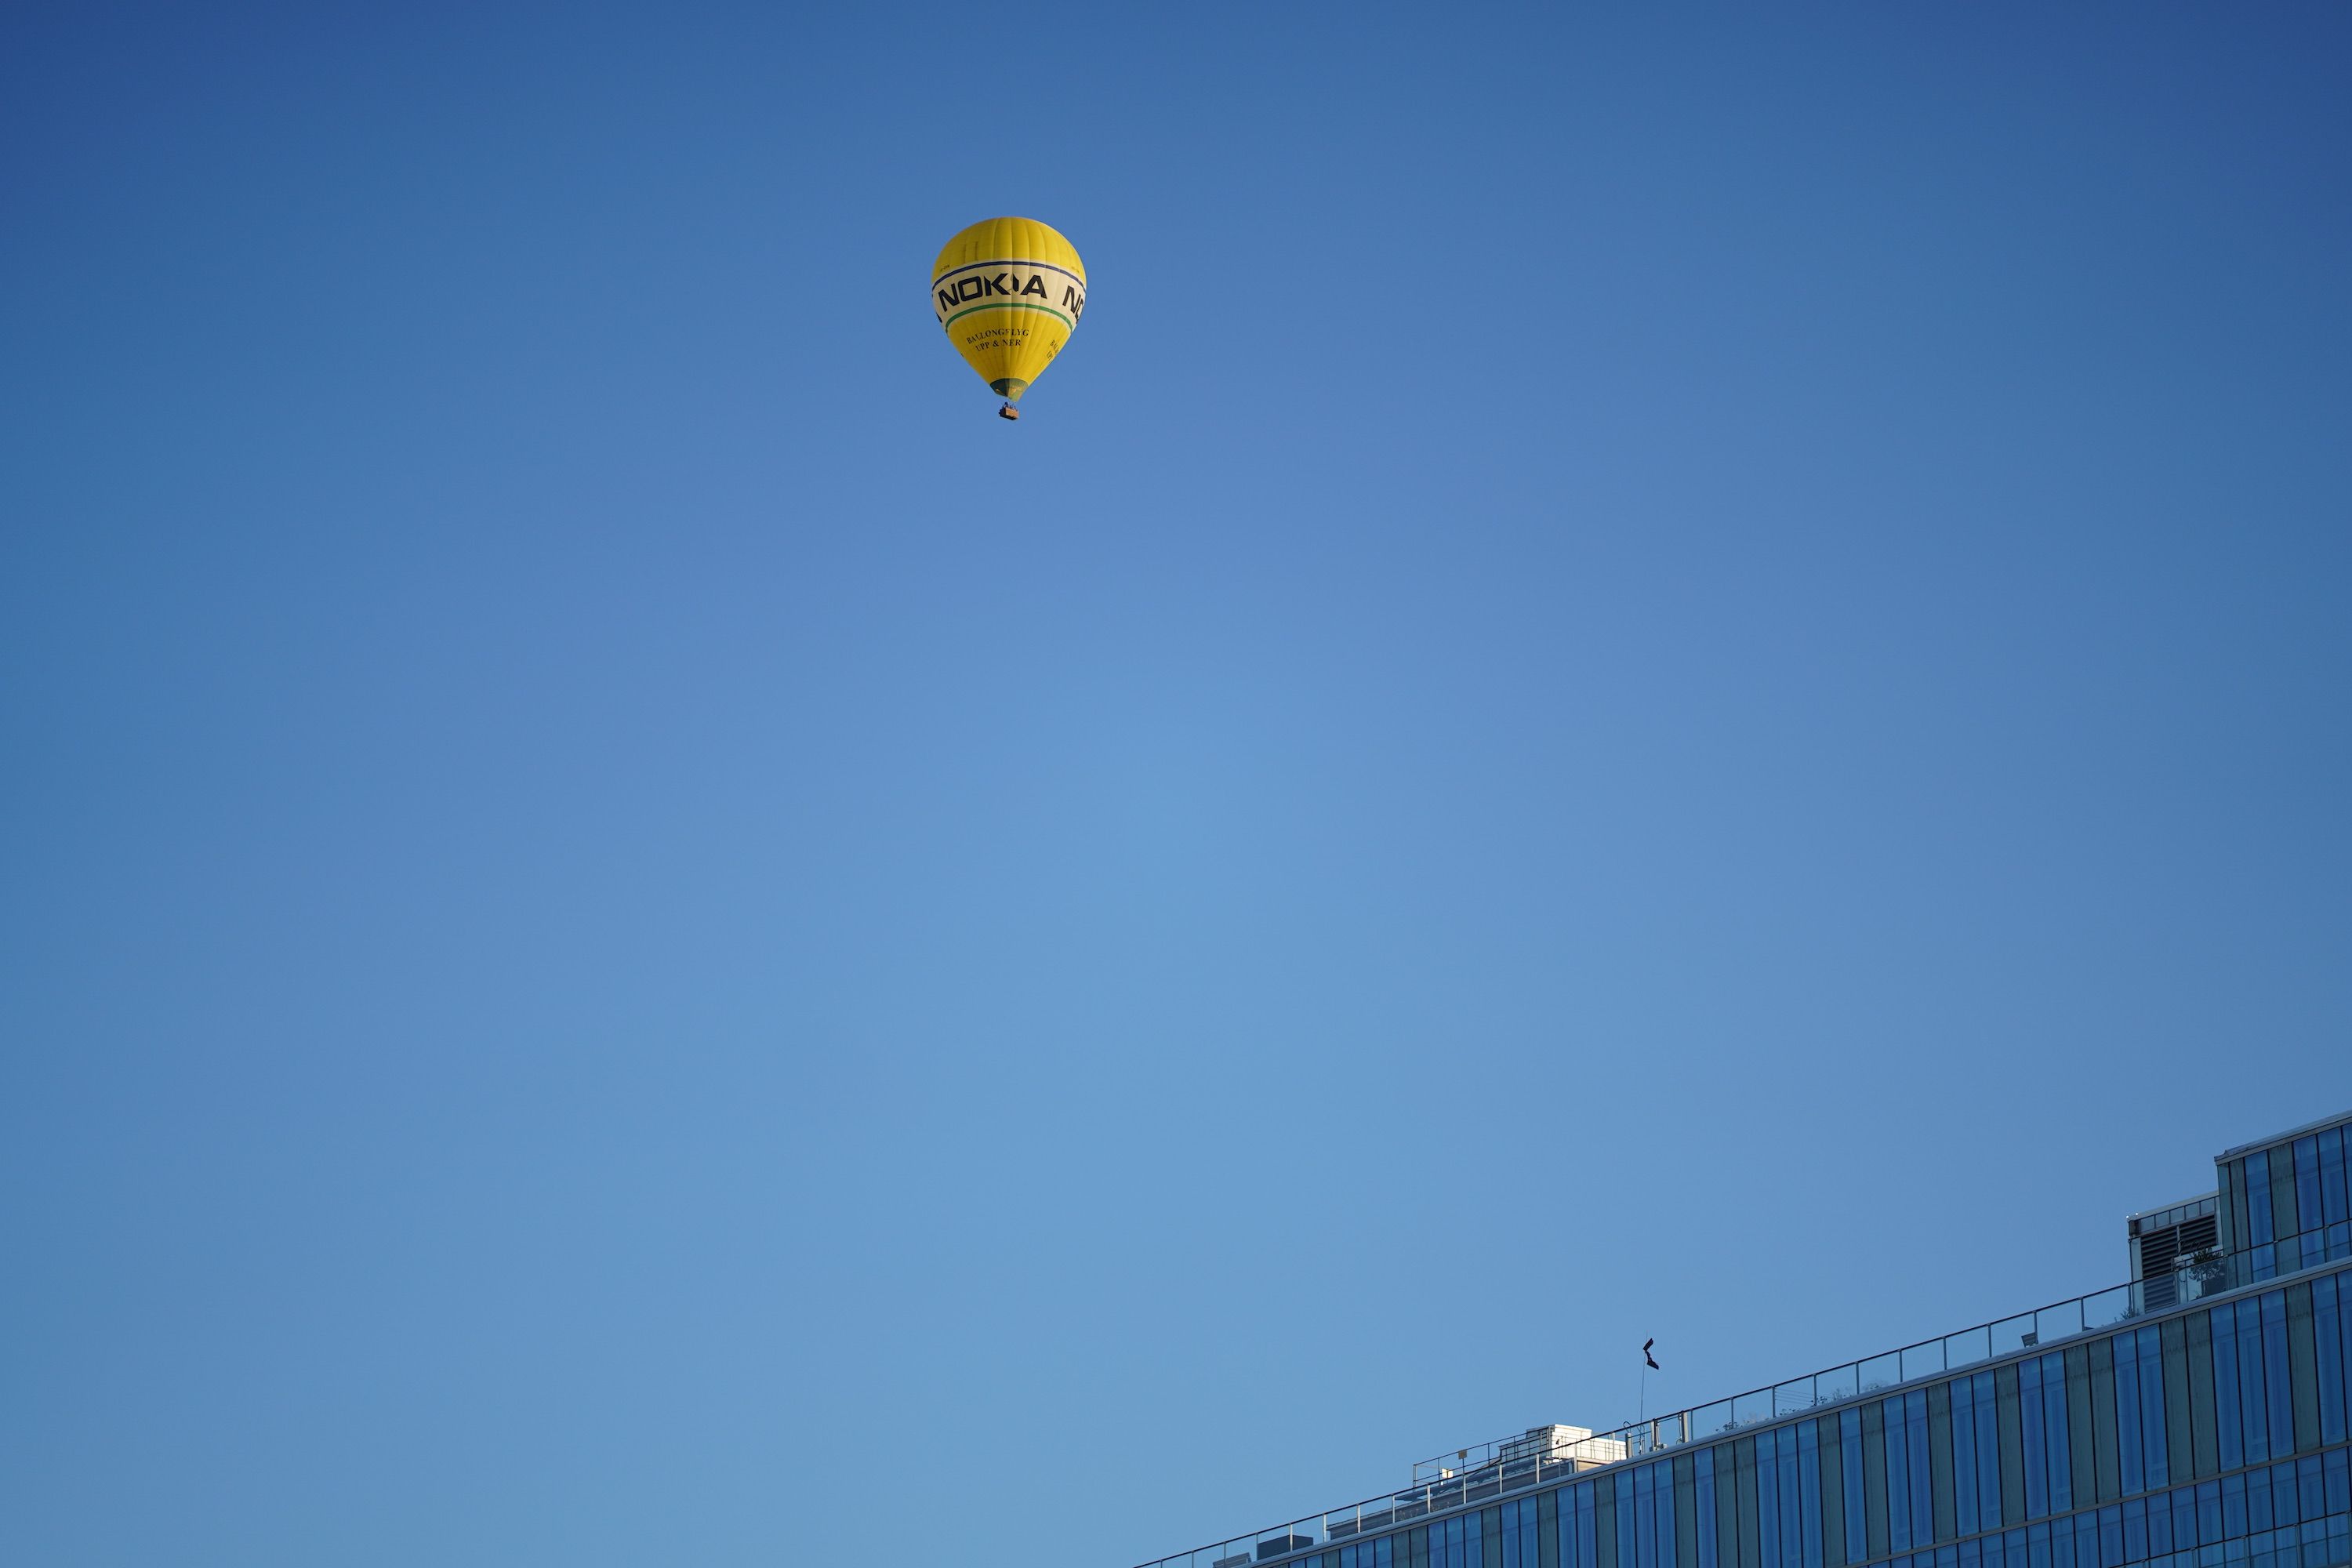 Stockholm Nokia Balloon